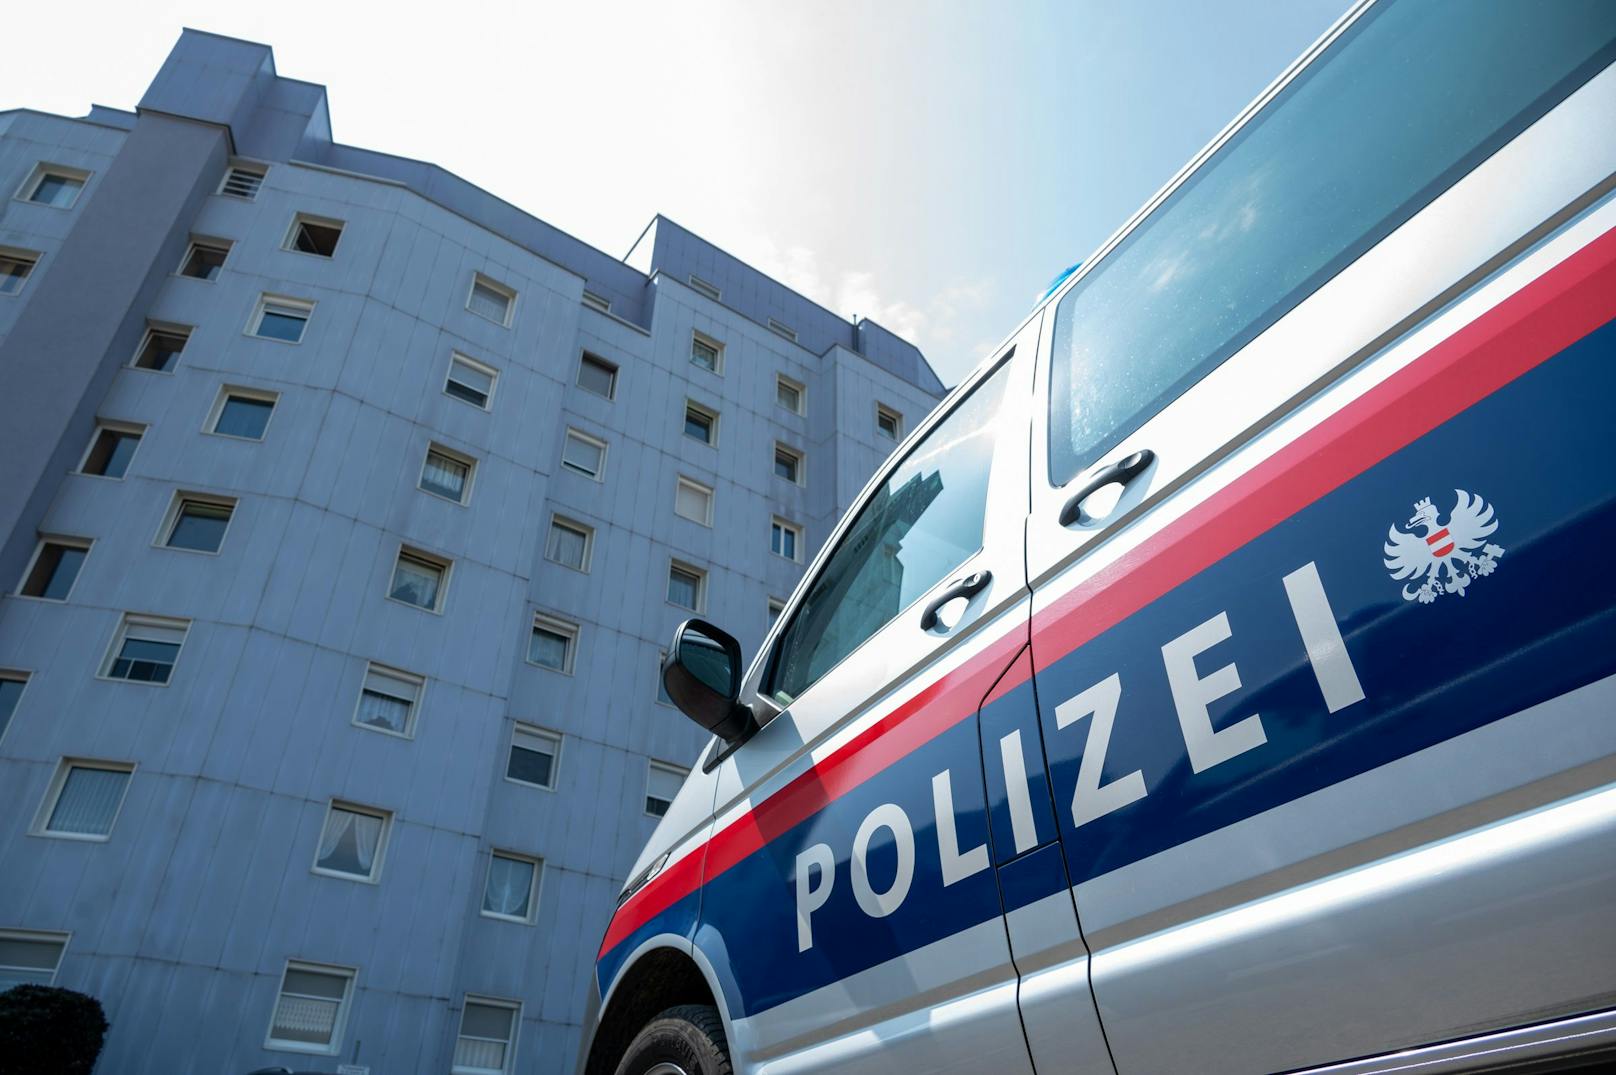 Polizeieinsatz in diesem Mehrparteienhaus in Asten: Ein 40-Jähriger soll seine Ehefrau mit einem Messer verletzt haben.